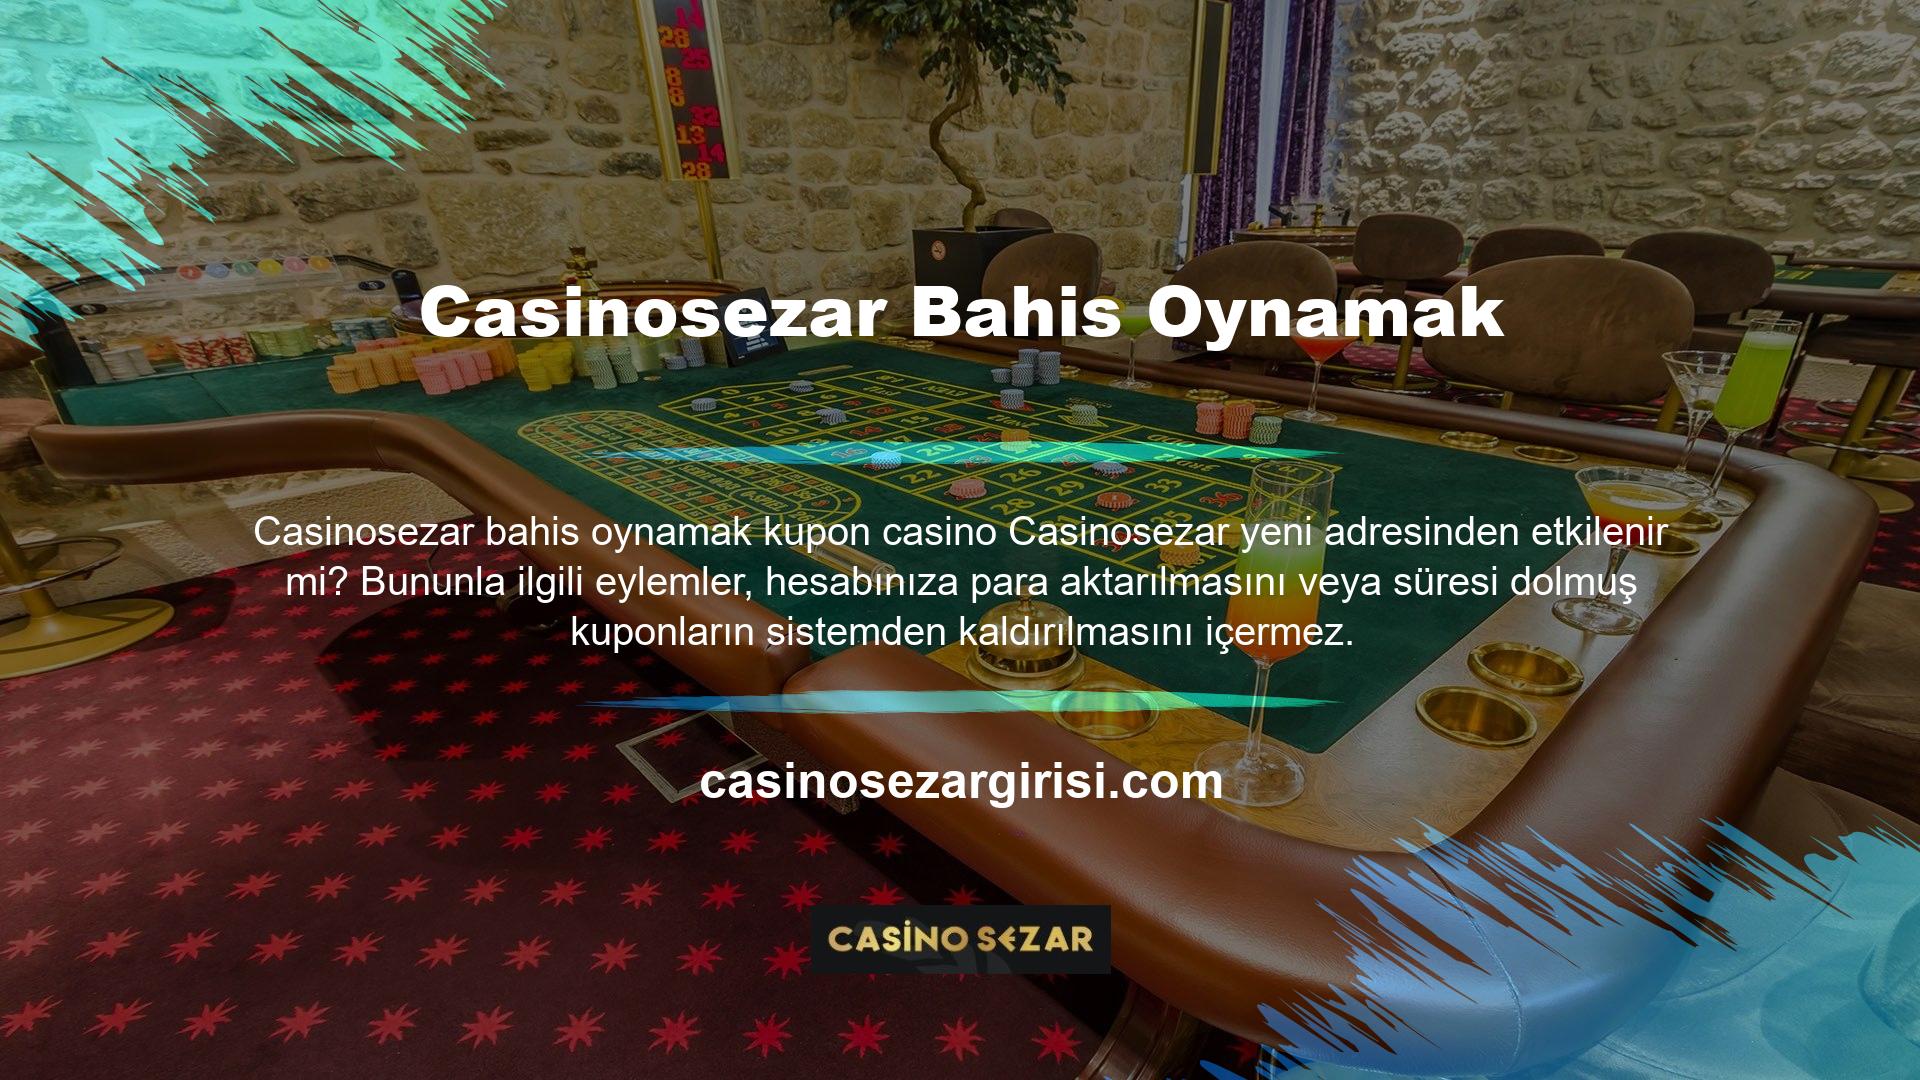 Casinosezar web sitesinde oluşturulan tüm kuponları takip etmek, yeni adresinizdeki adresi açıp ardından Bahisler ve Kuponlar'ı girerek yapılabilir